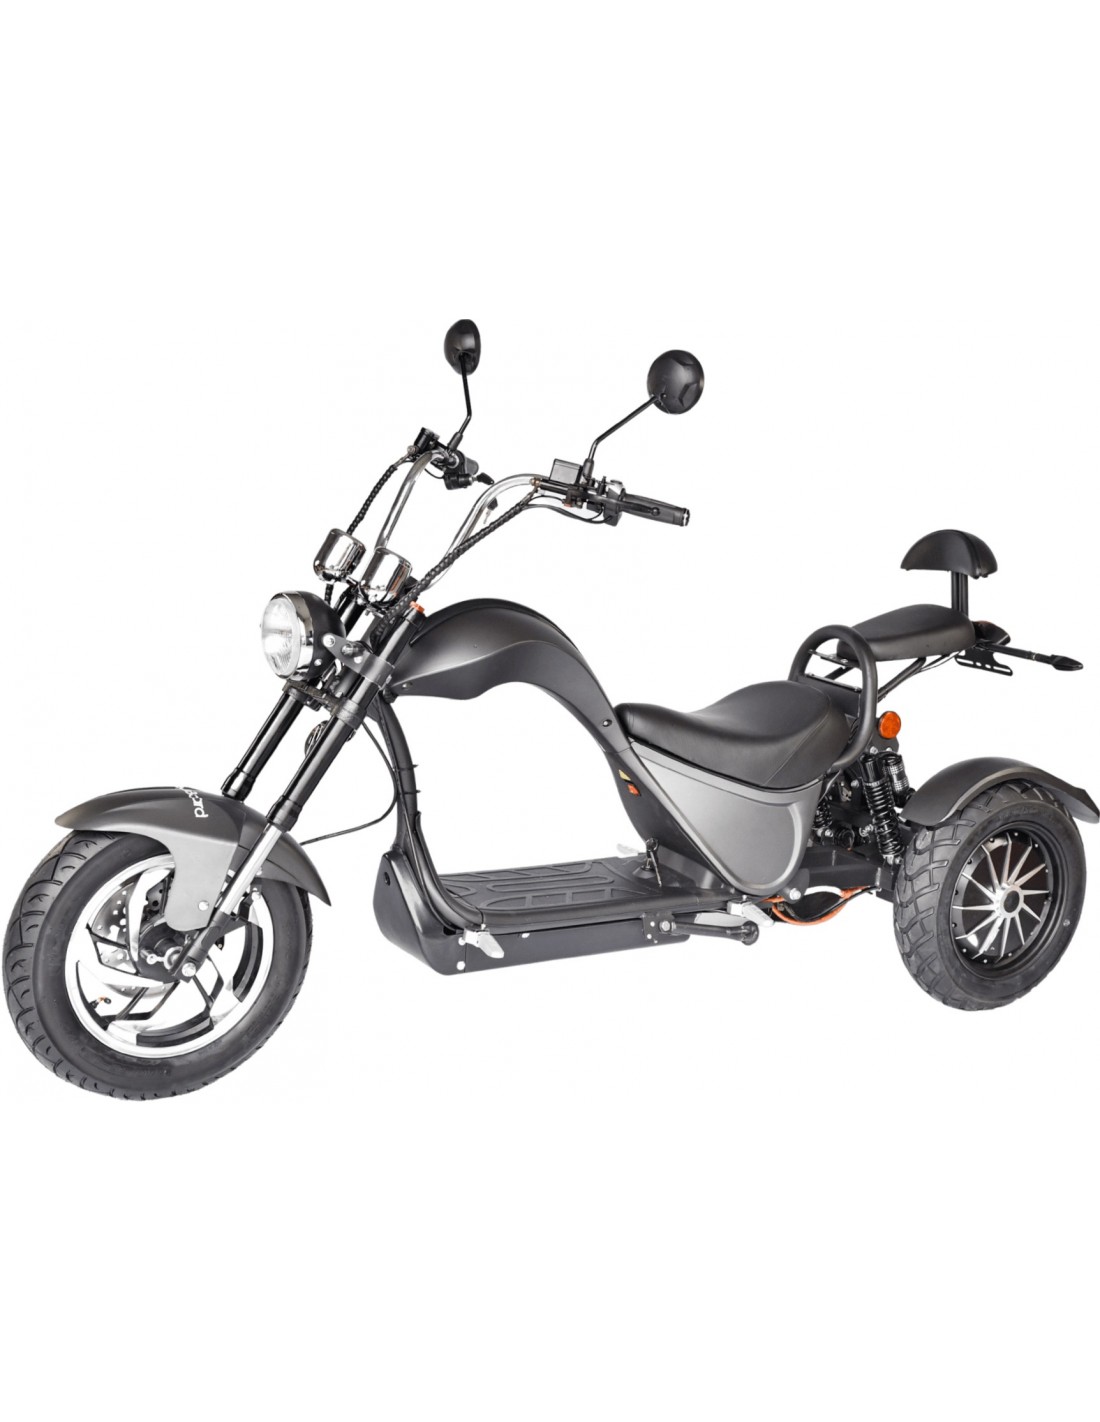 Scooter de mobilité électrique tout-terrain, moto électrique